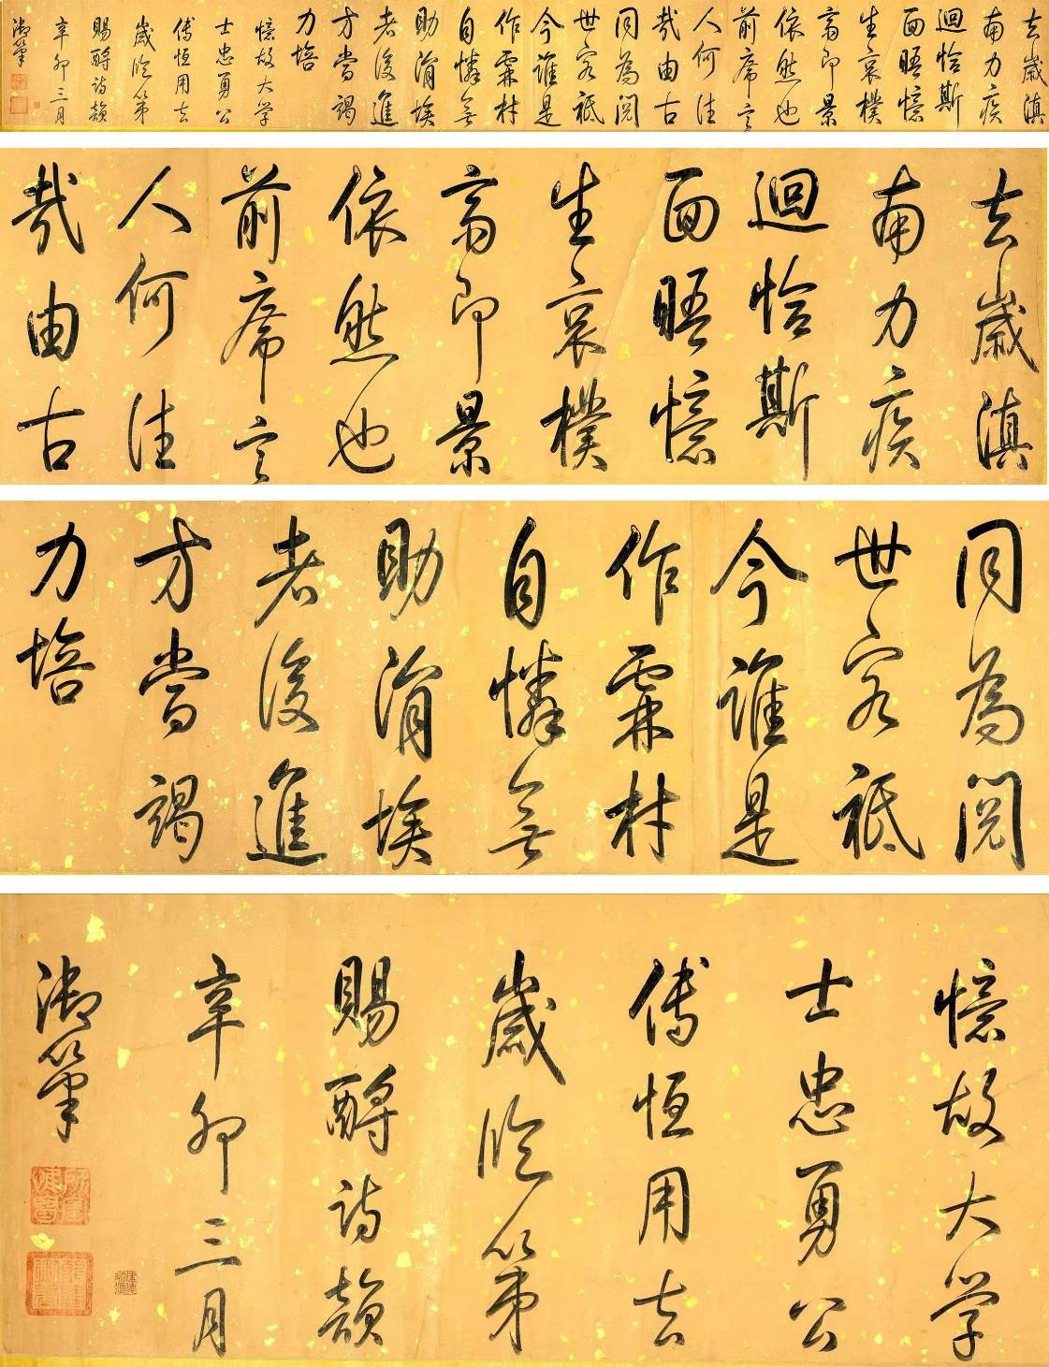 乾隆皇帝行書大長卷紙本 Emperor Qian Long1711-1799) ...